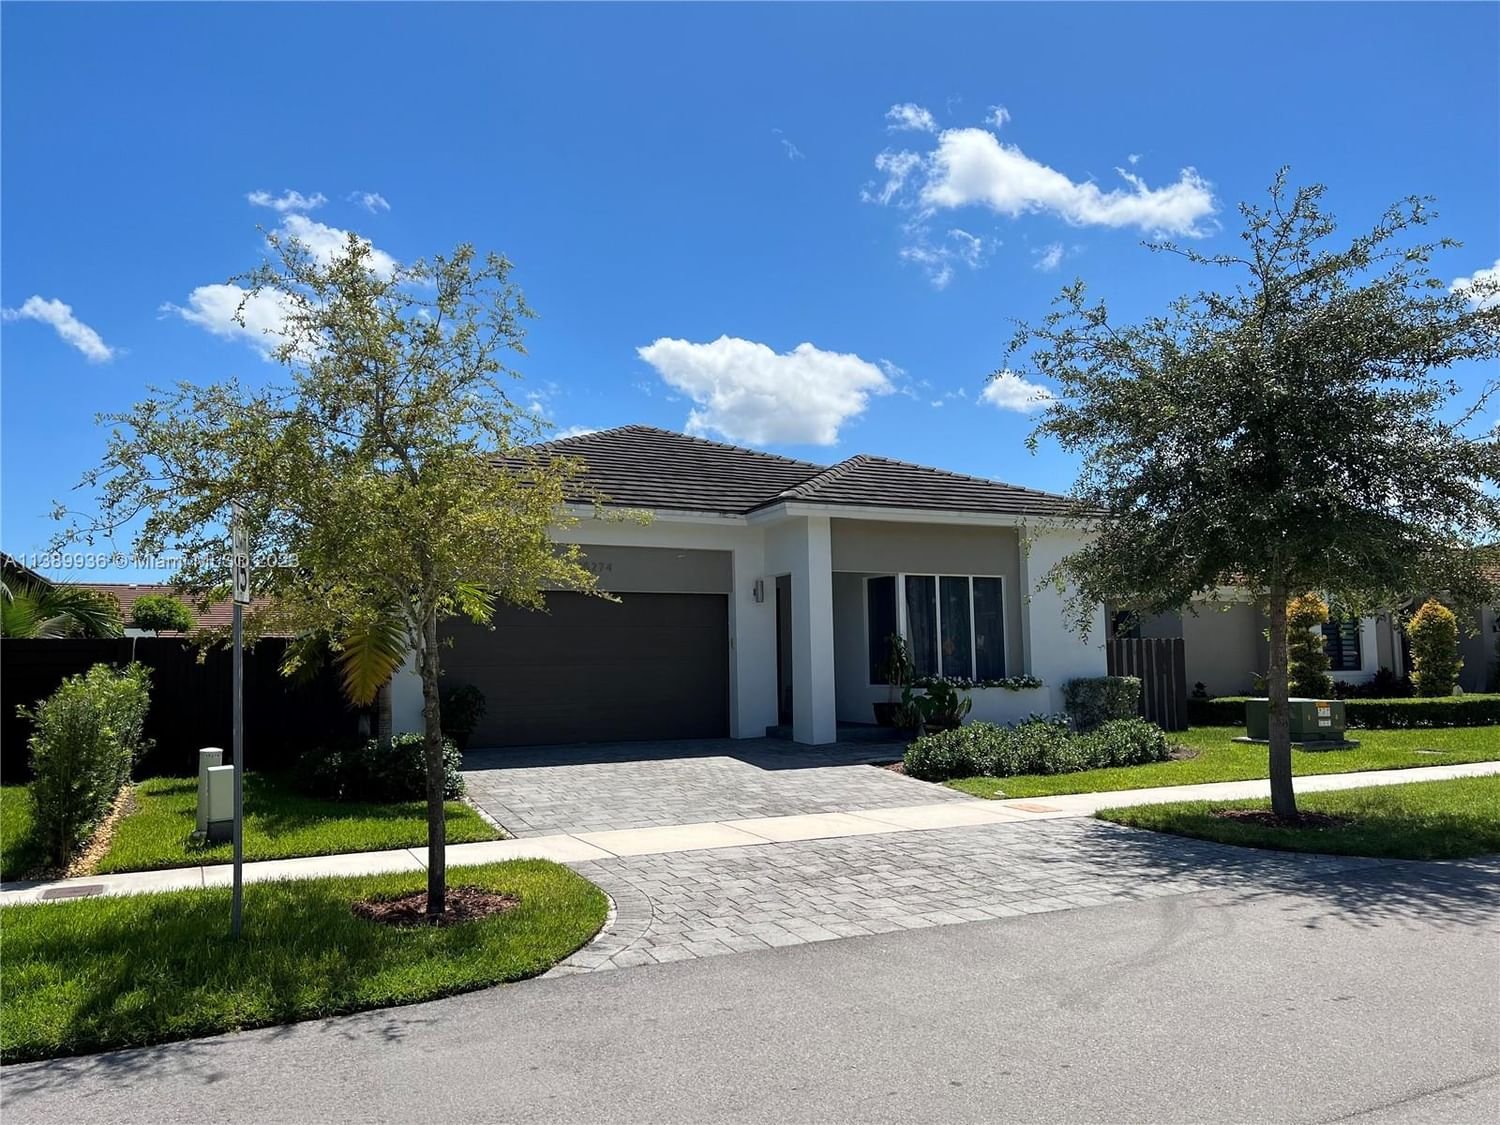 Real estate property located at 15274 176th Ln, Miami-Dade County, Miami, FL